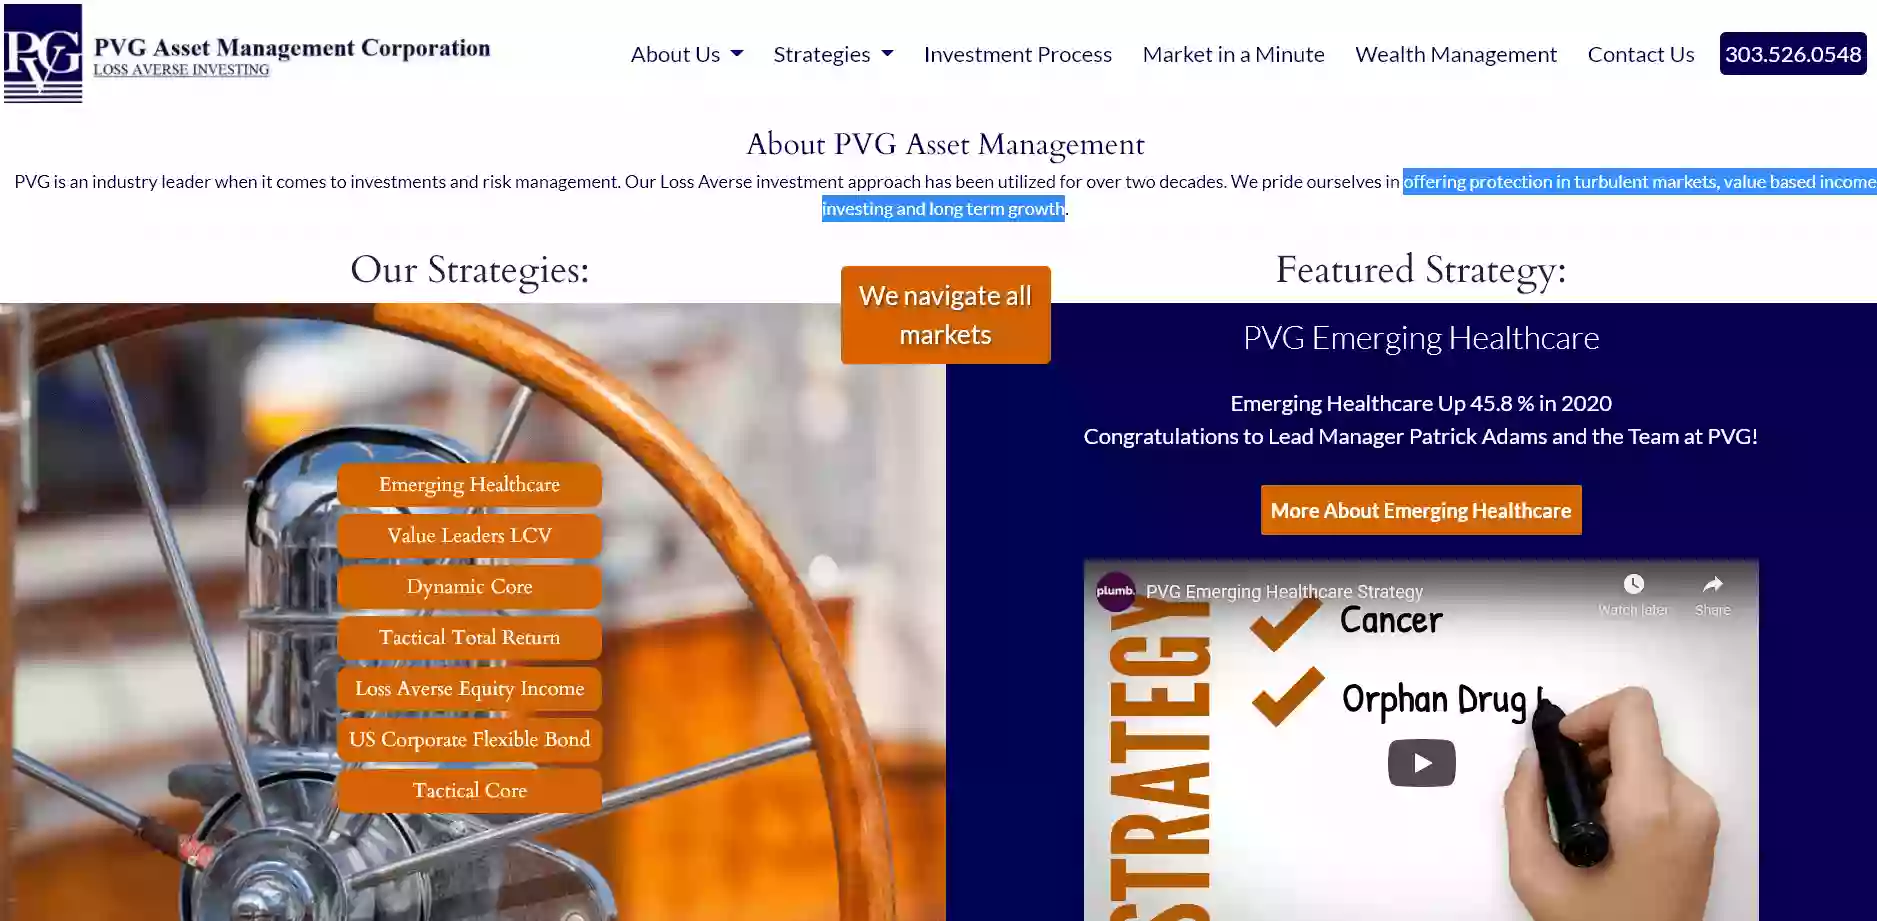 PVG Asset Management Corporation